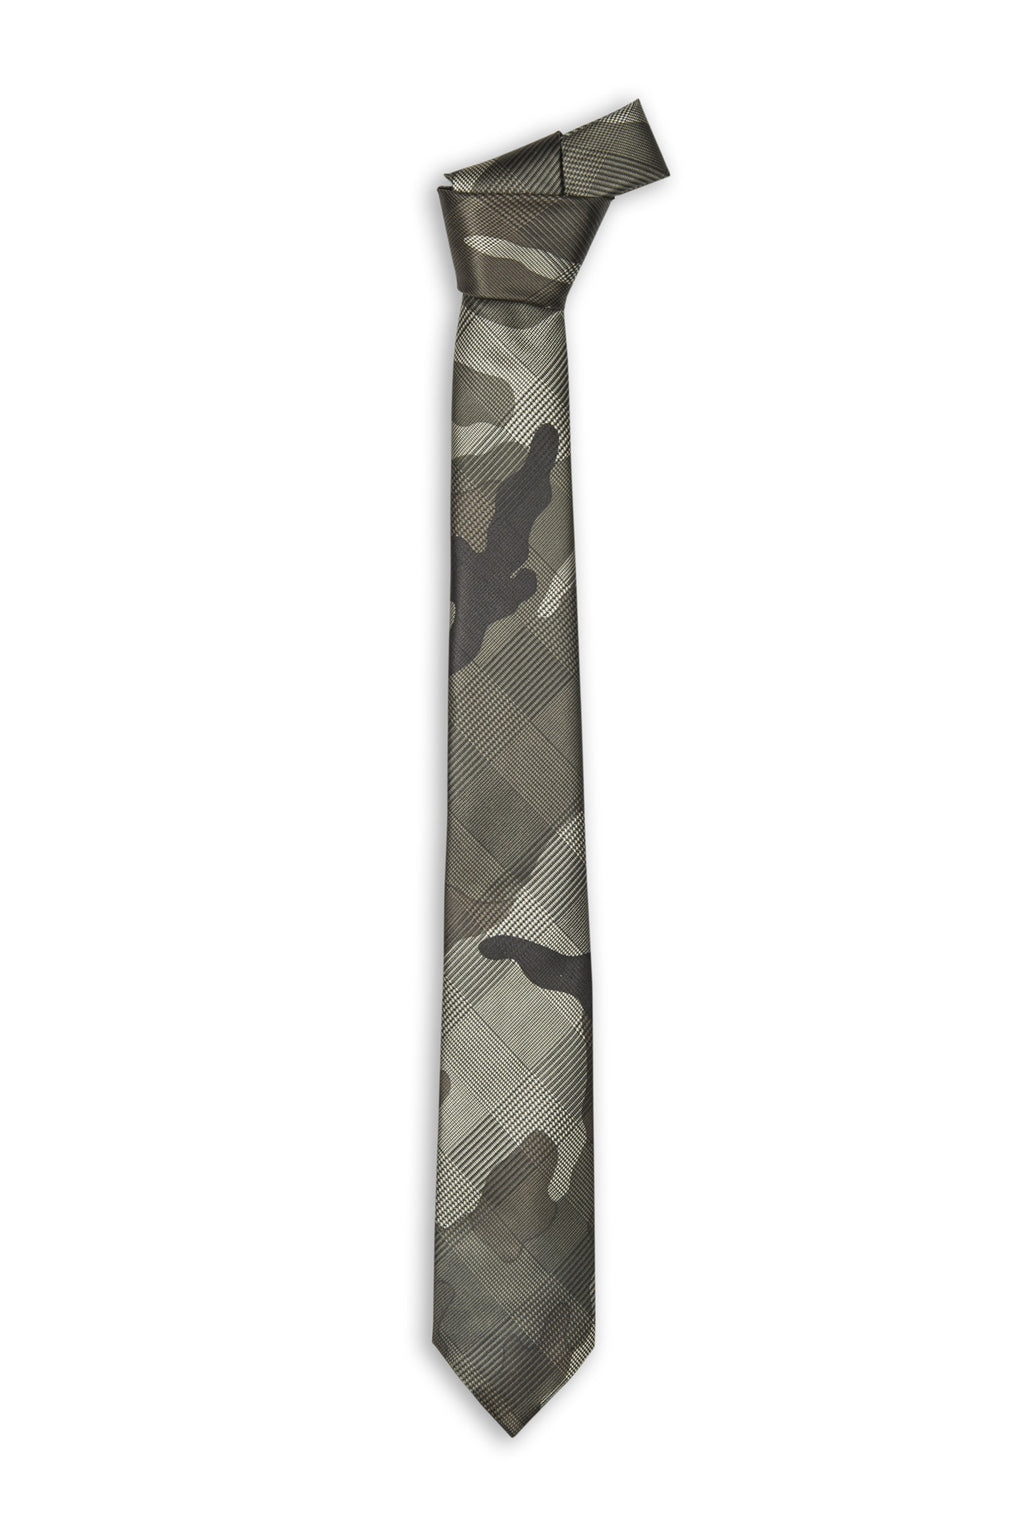 Cravate fait main tissu camouflage Italie - Camo fabric handmade tie